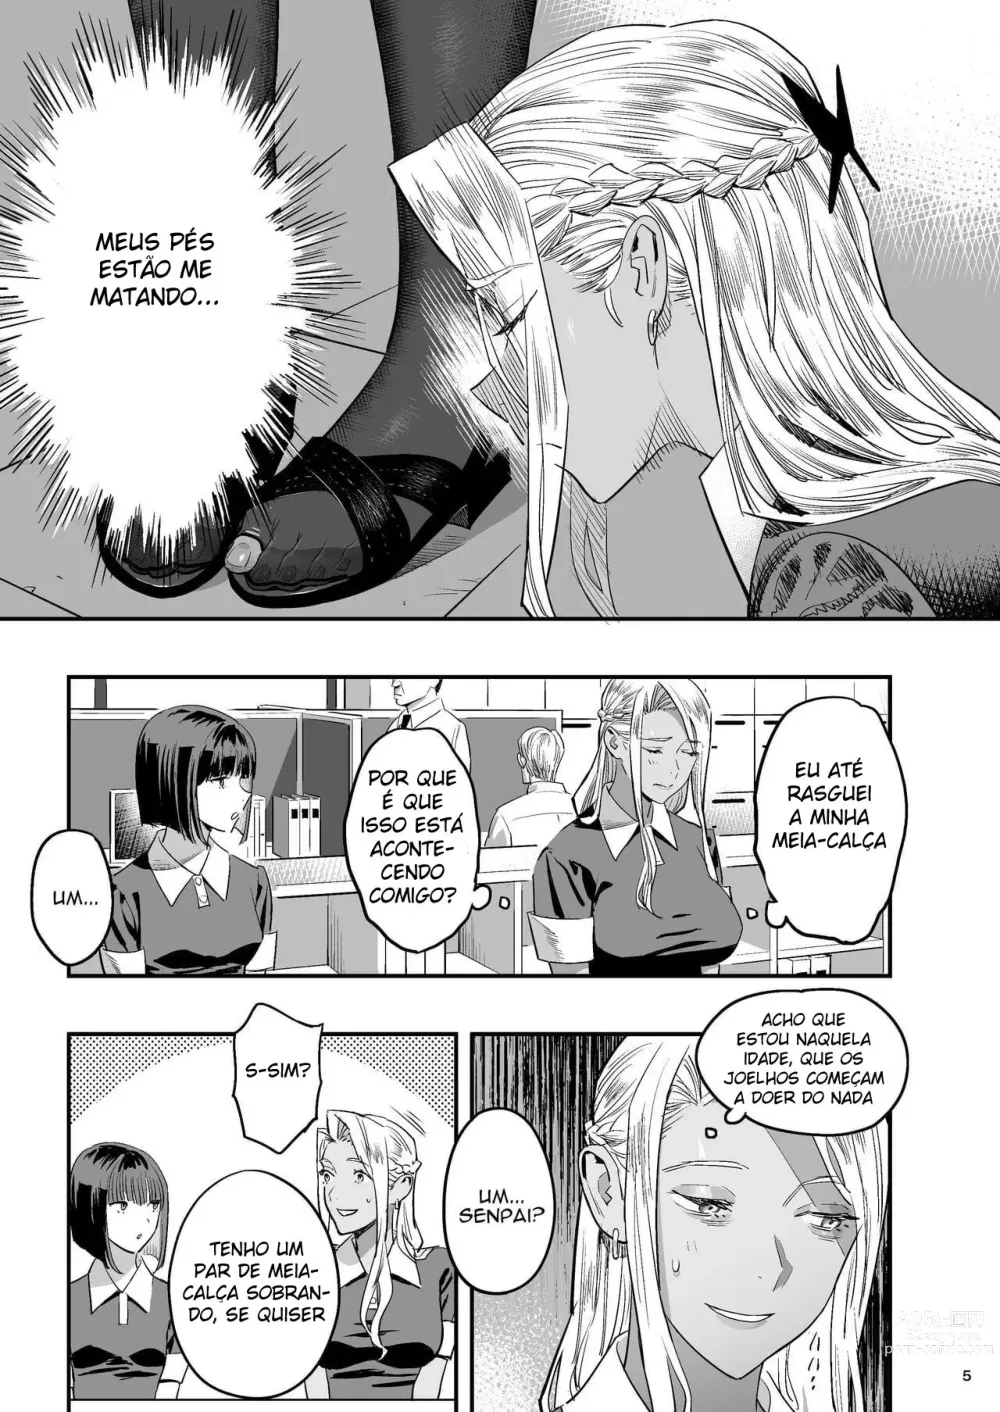 Page 4 of doujinshi Mas eu Gostava Dela Antes de Você, Quiroprata.